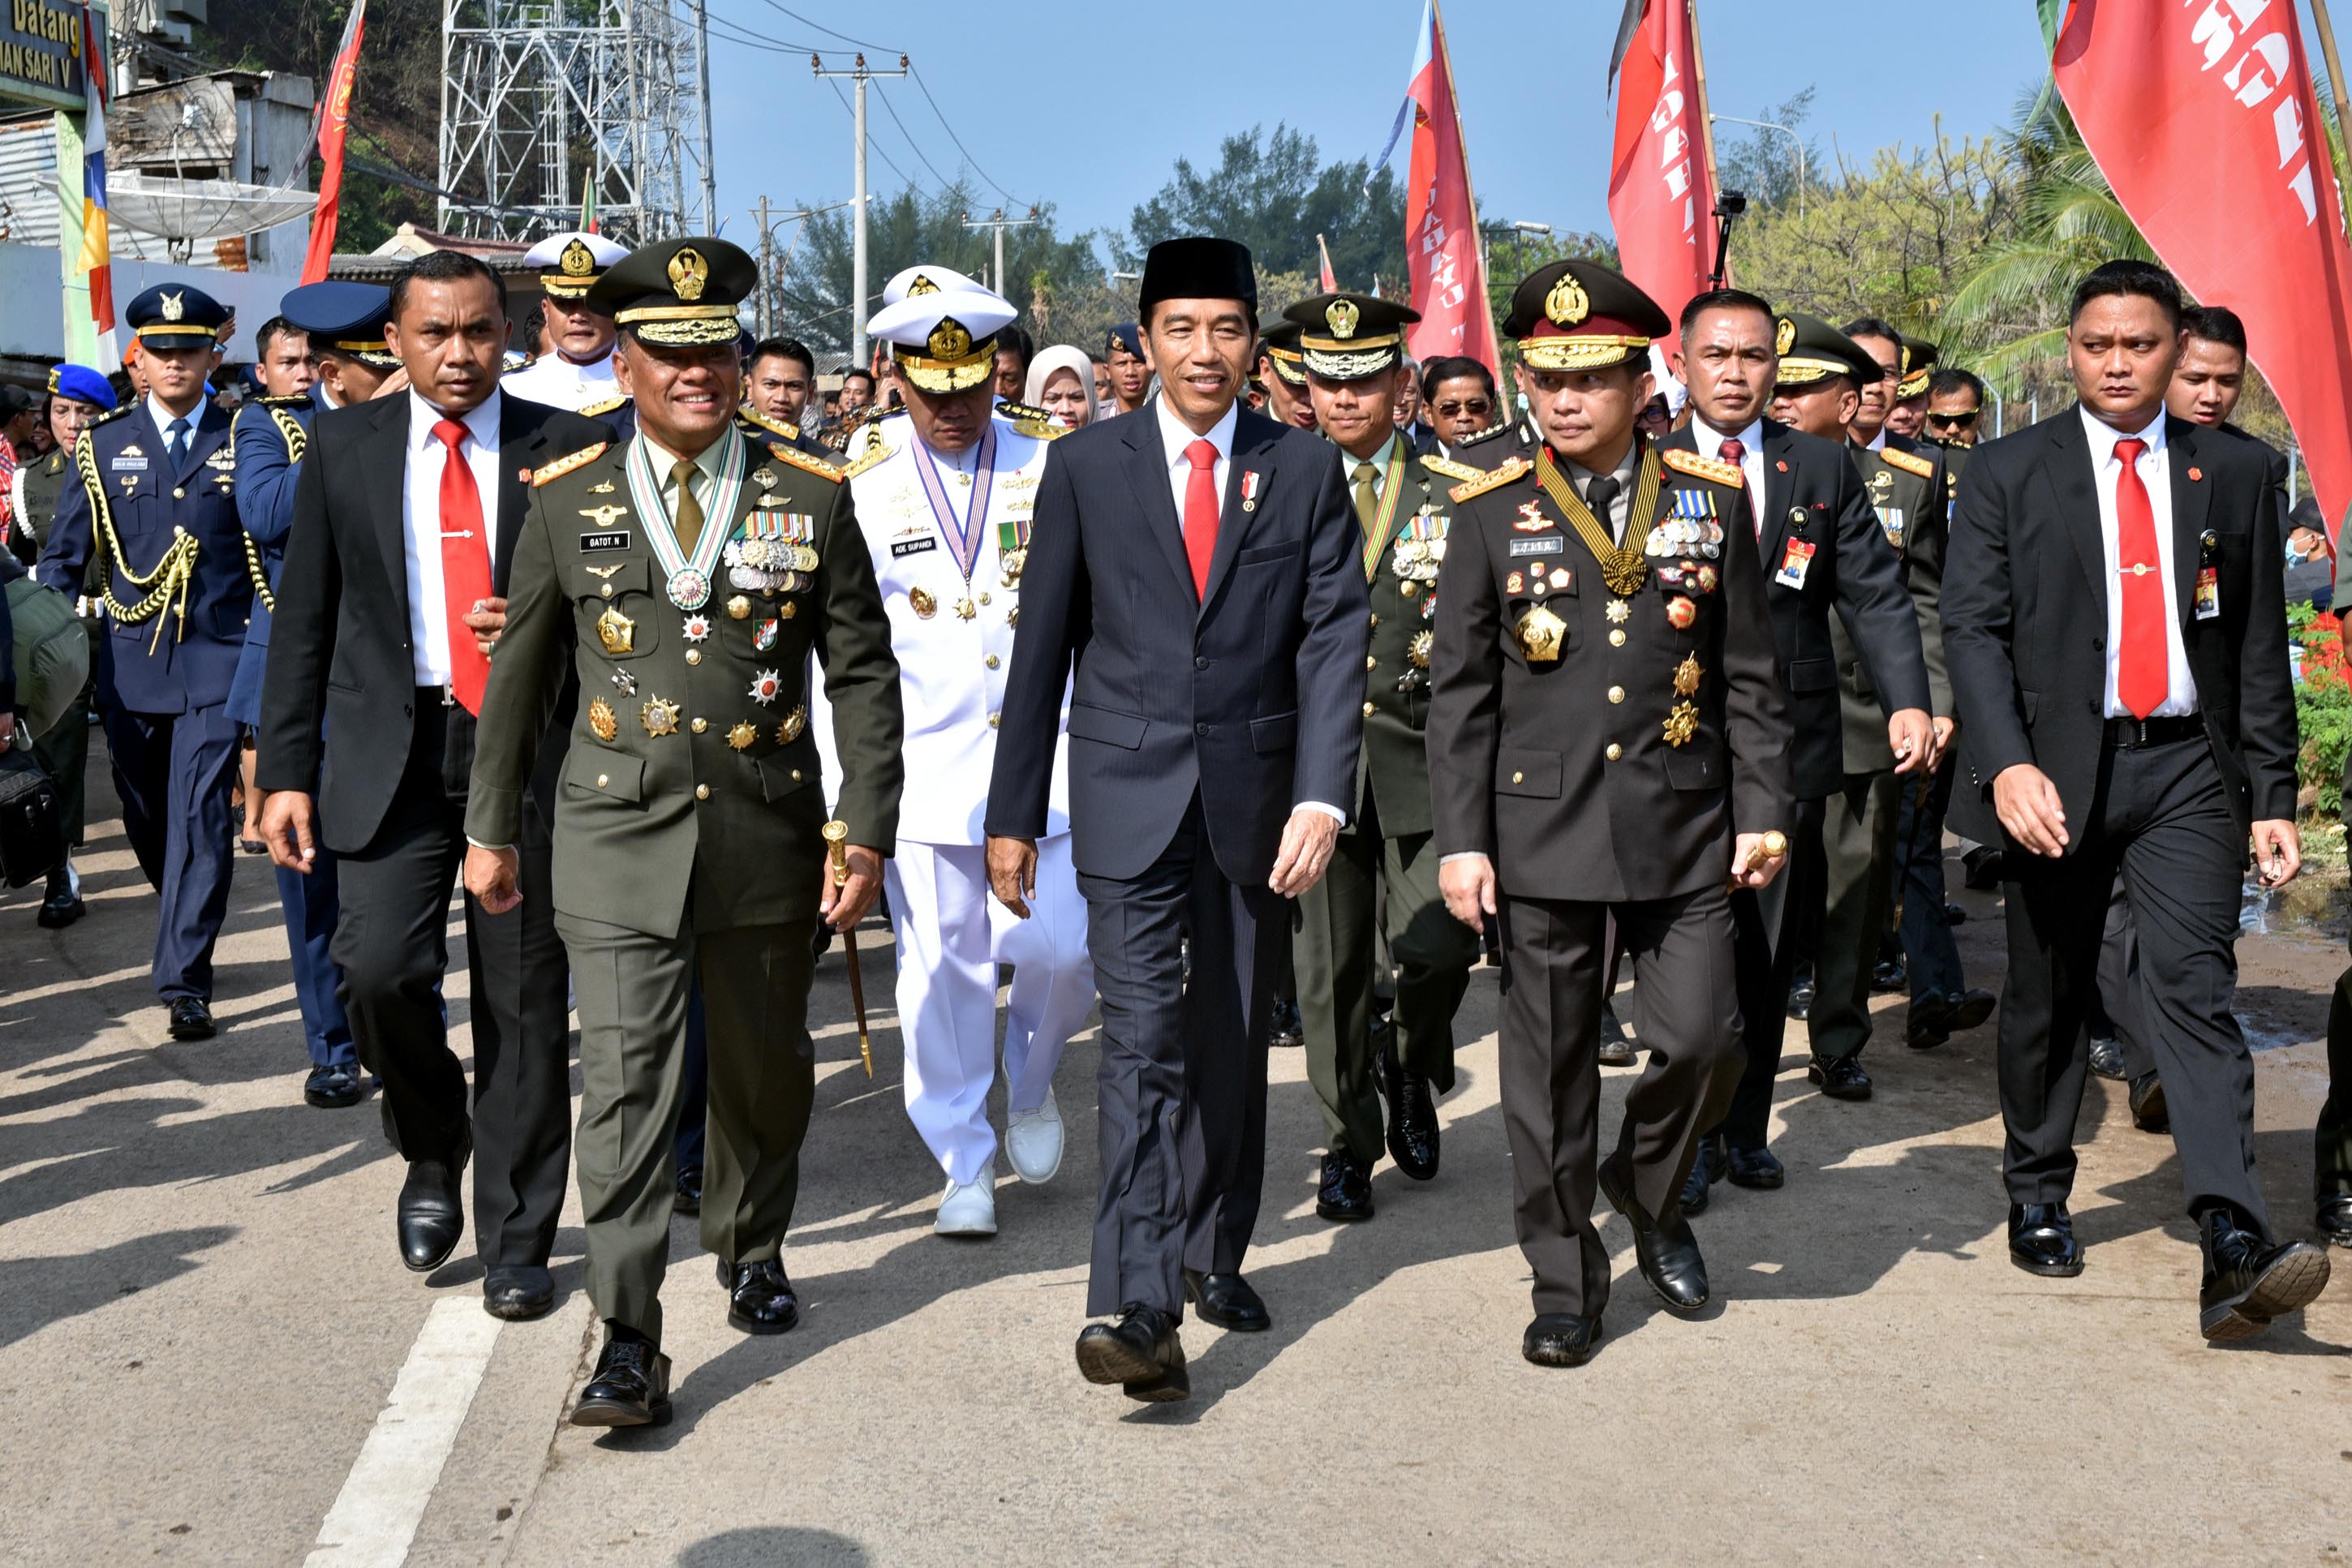 موكب الرئيس الإندونيسى يصل إلى ساحة العرض سيرًا على الأقدام